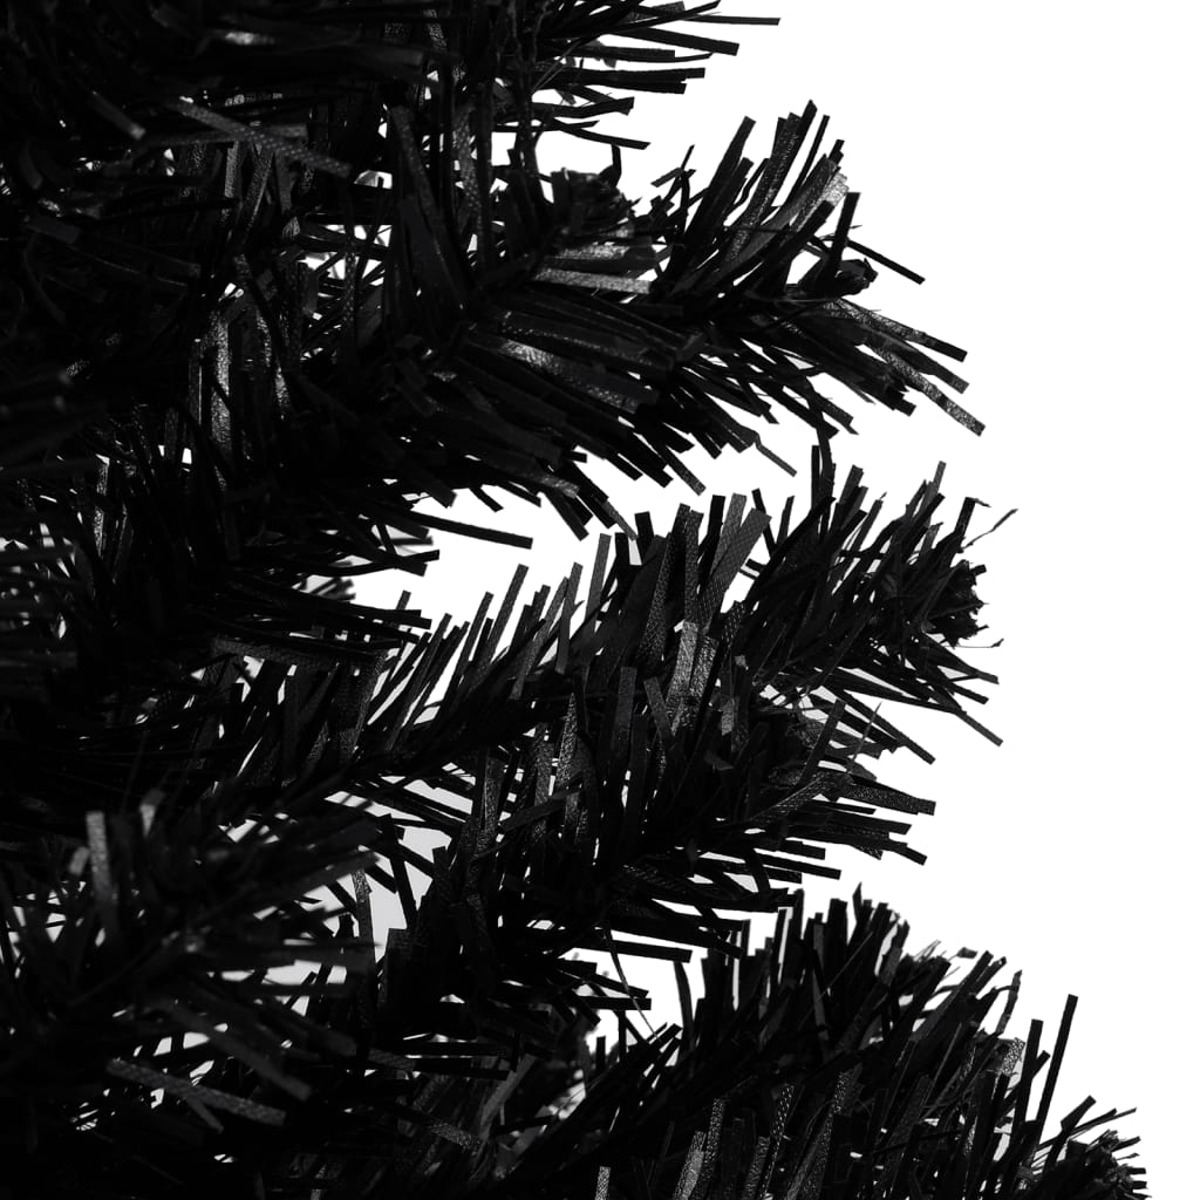 Weihnachtsbaum 3077503 VIDAXL